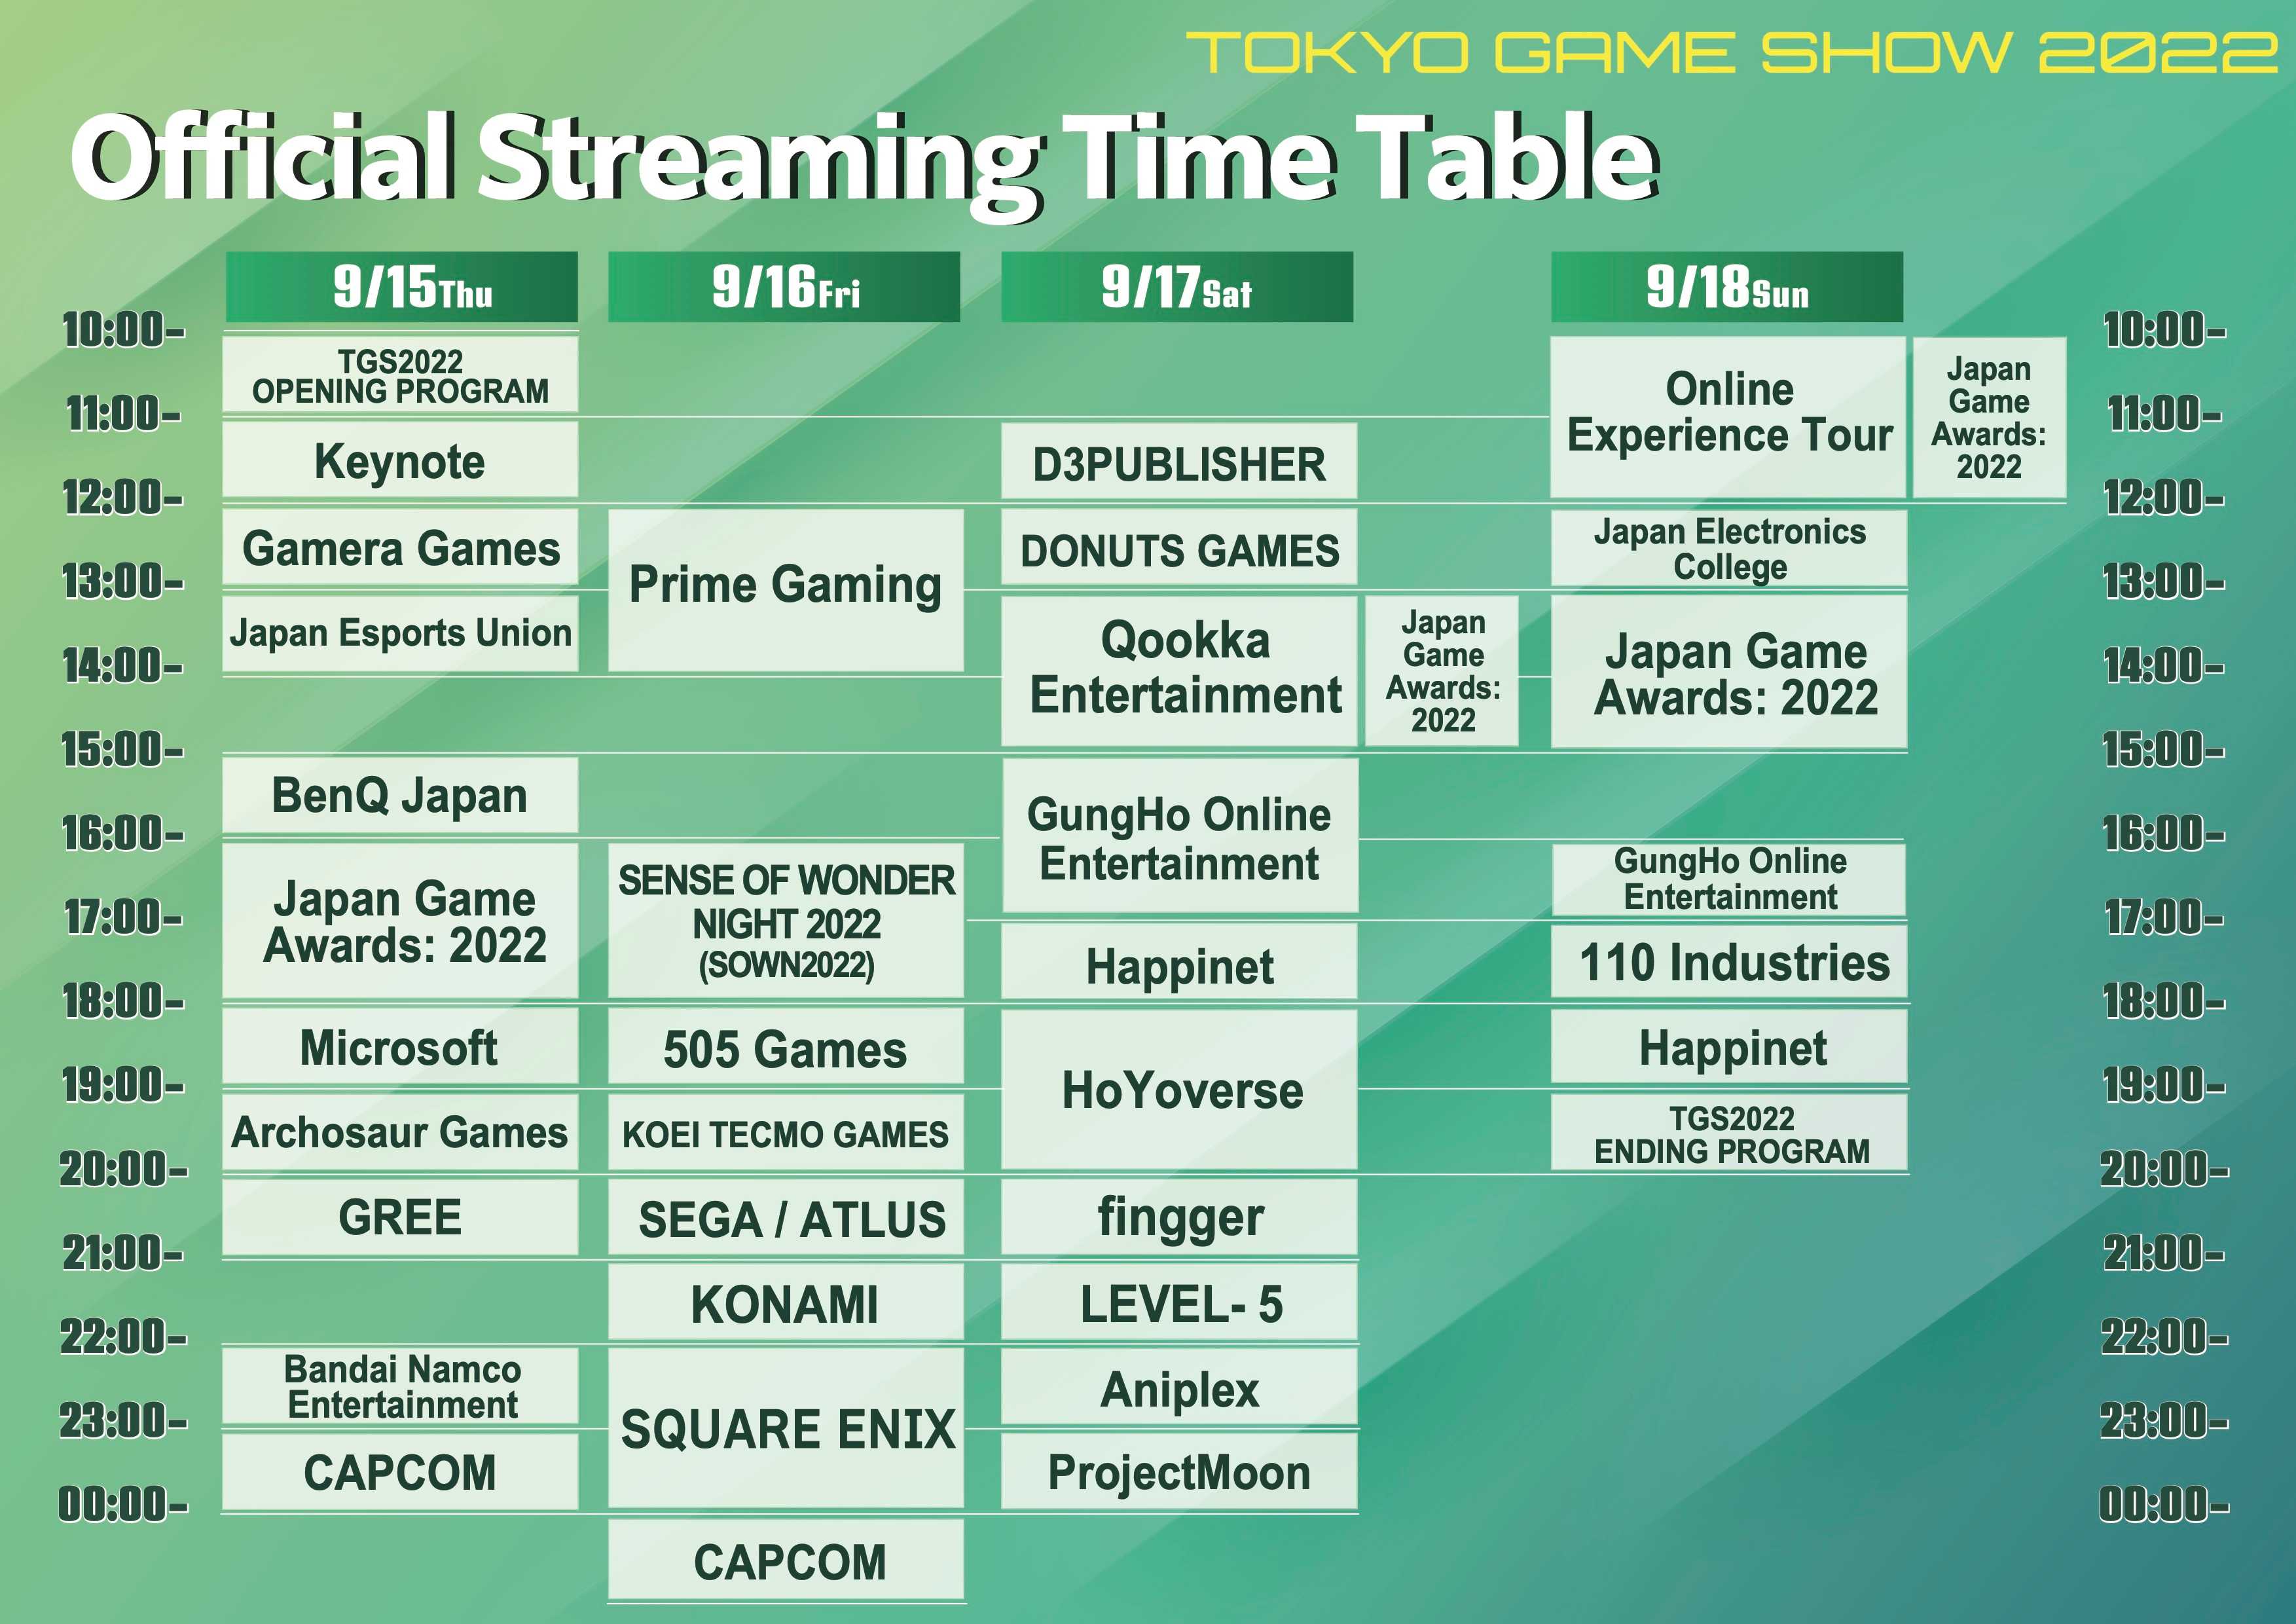 일본 도쿄 게임쇼 Tokyo Game Show 2022 공식 온라인 스트리밍 프로그램 Official Live Streaming Timetable